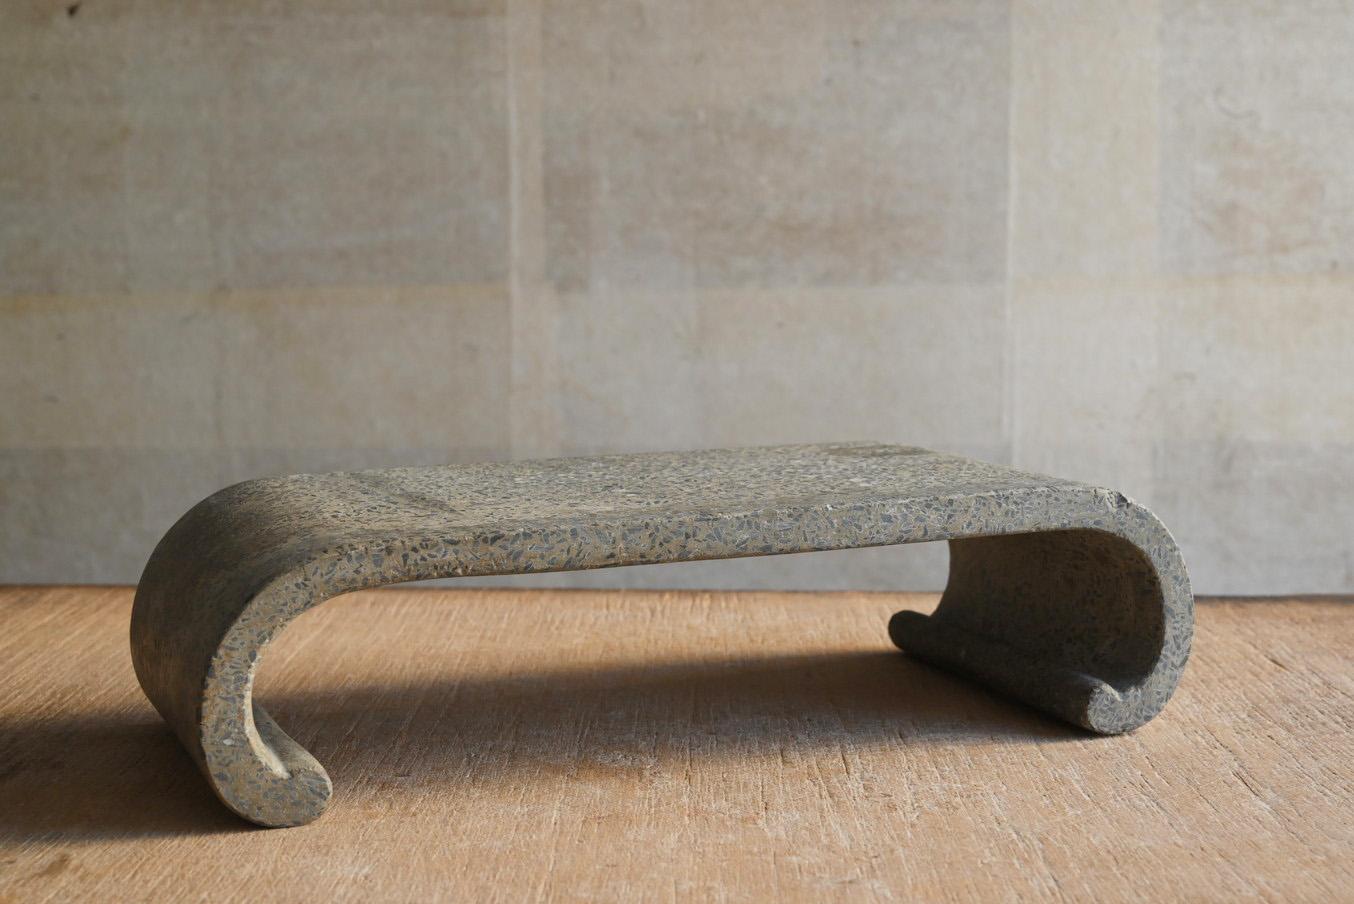 Dies ist ein kleiner Stand aus altem japanischem Beton.
Diese Form wird 